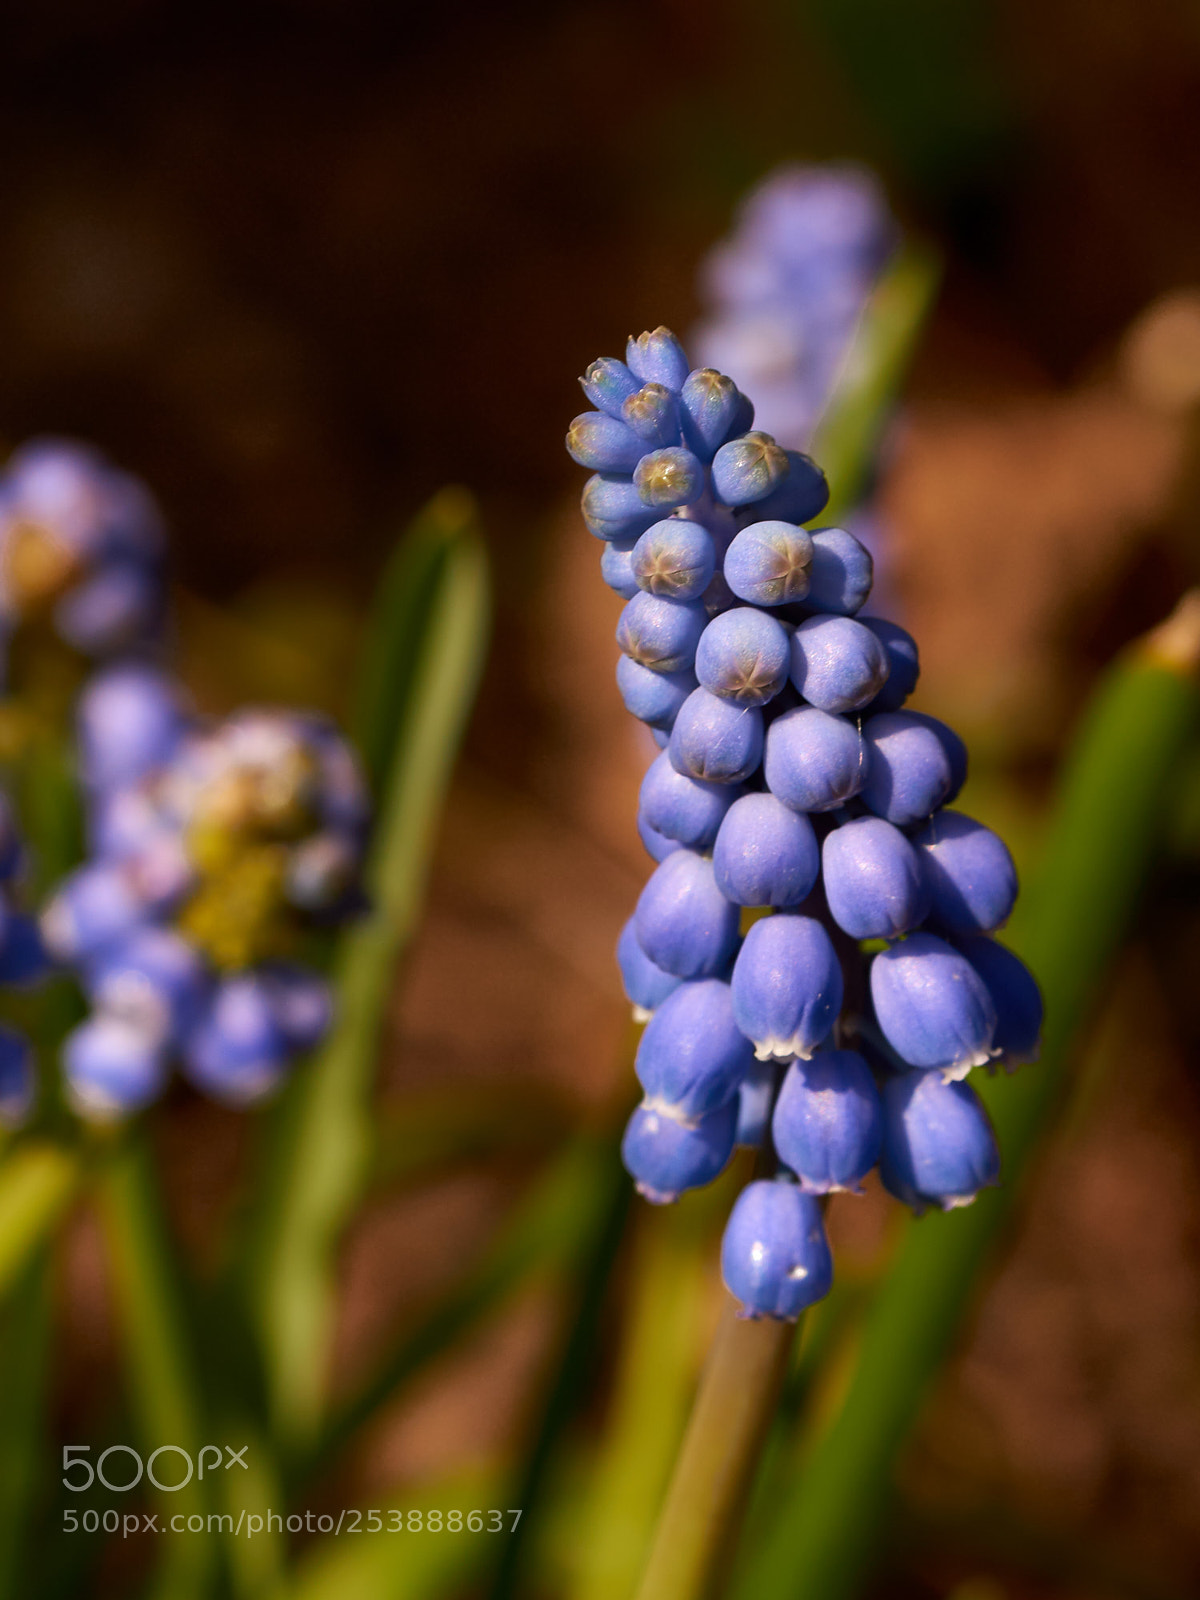 Sony SLT-A65 (SLT-A65V) sample photo. Grape hyacinths  - 2 photography